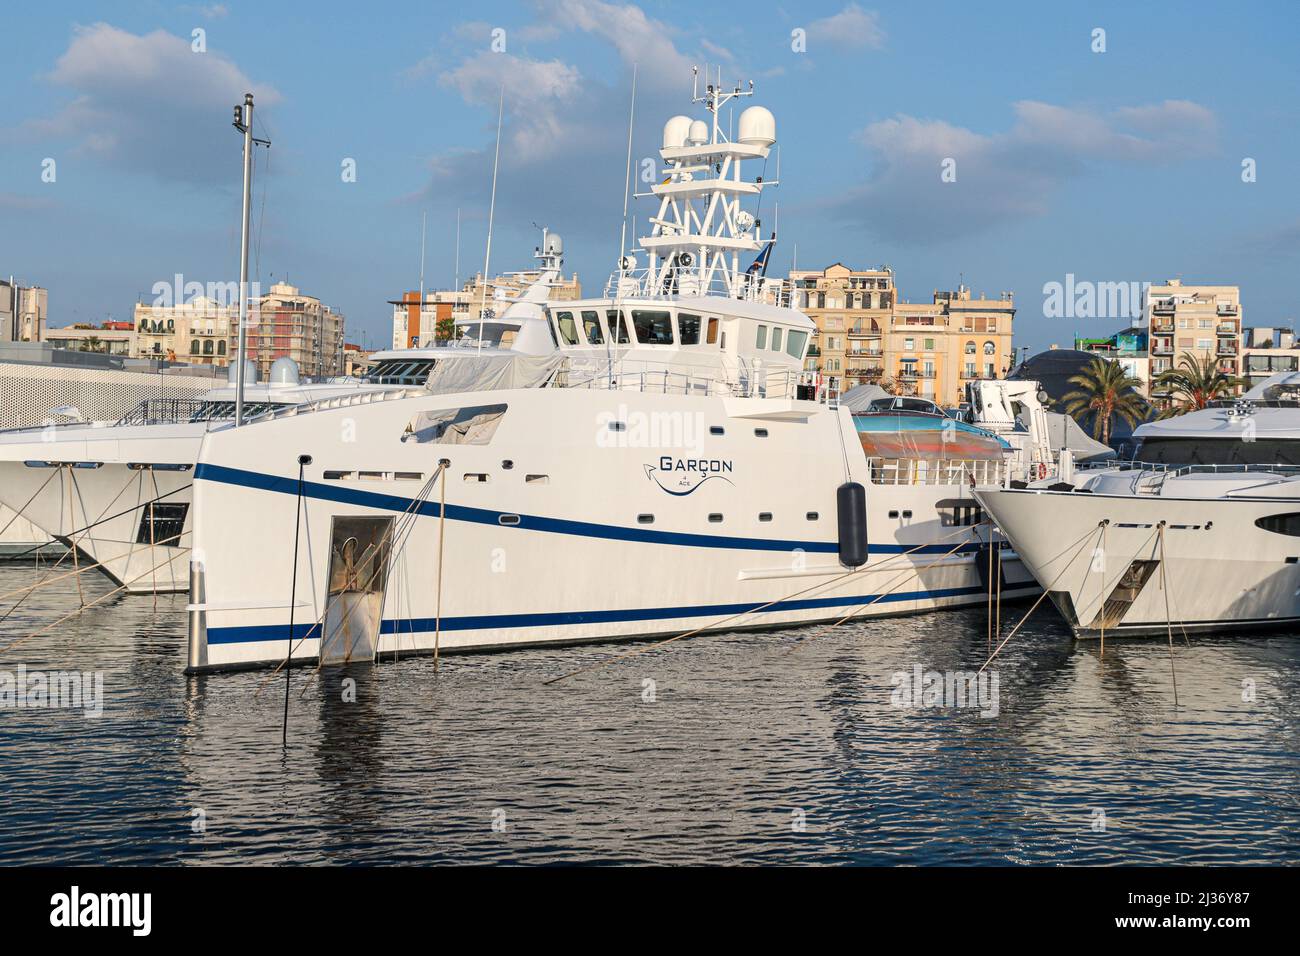 Lo yacht Garcon di proprietà del miliardario russo e oligarca romano Abramovich. Foto Stock